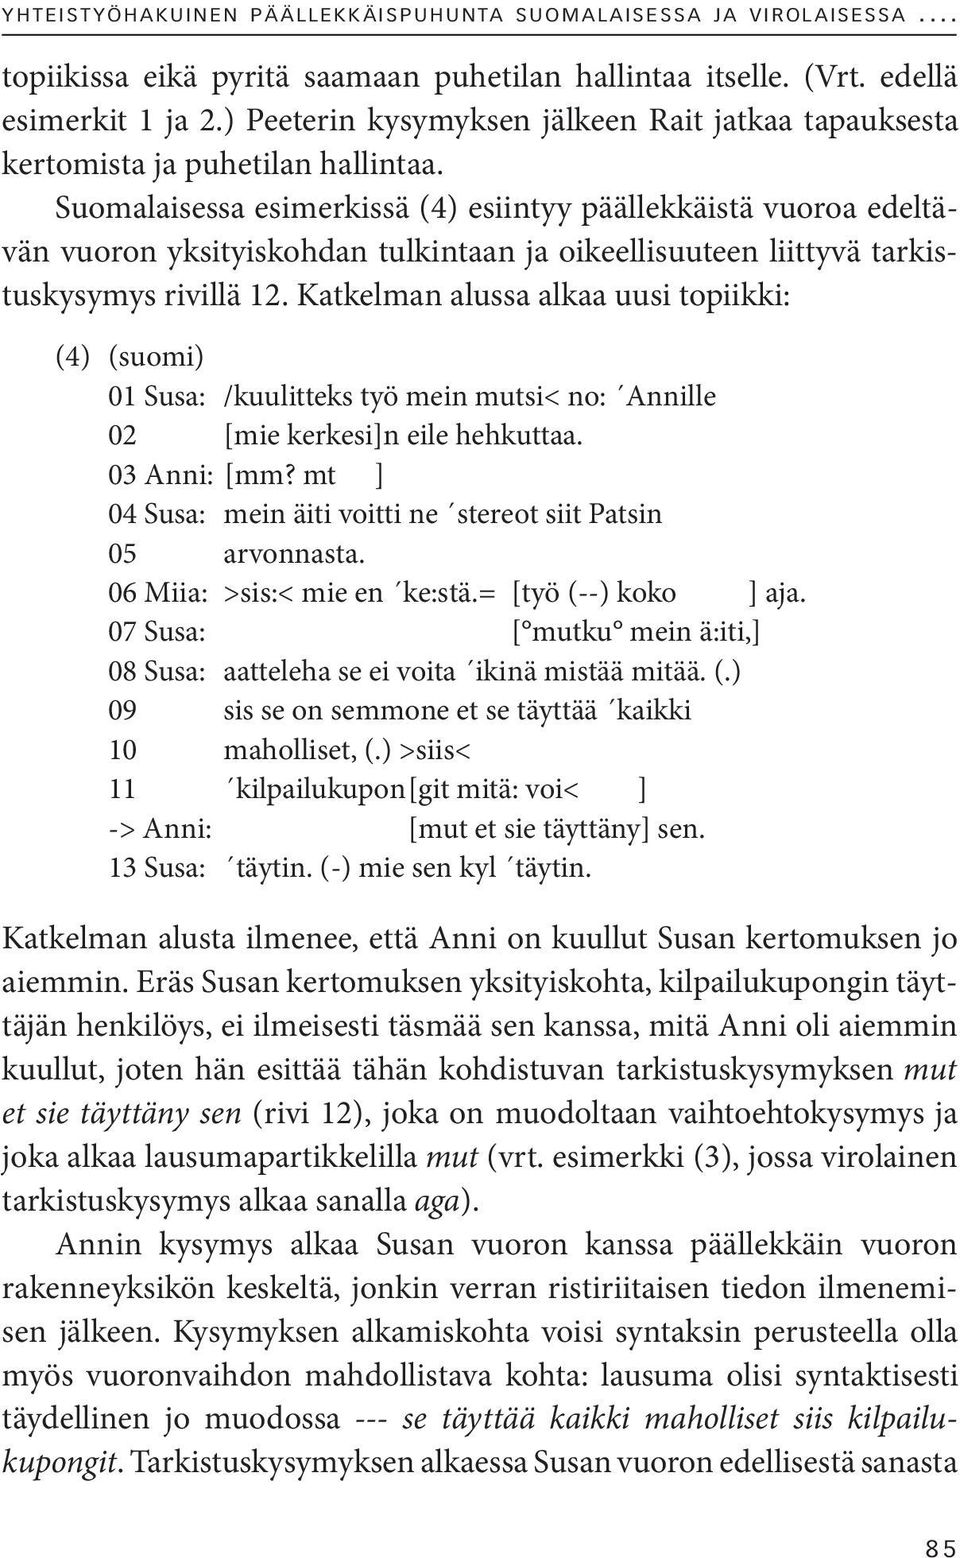 Suomalaisessa esimerkissä (4) esiintyy päällekkäistä vuoroa edeltävän vuoron yksityiskohdan tulkintaan ja oikeellisuuteen liittyvä tarkistuskysymys rivillä 12.